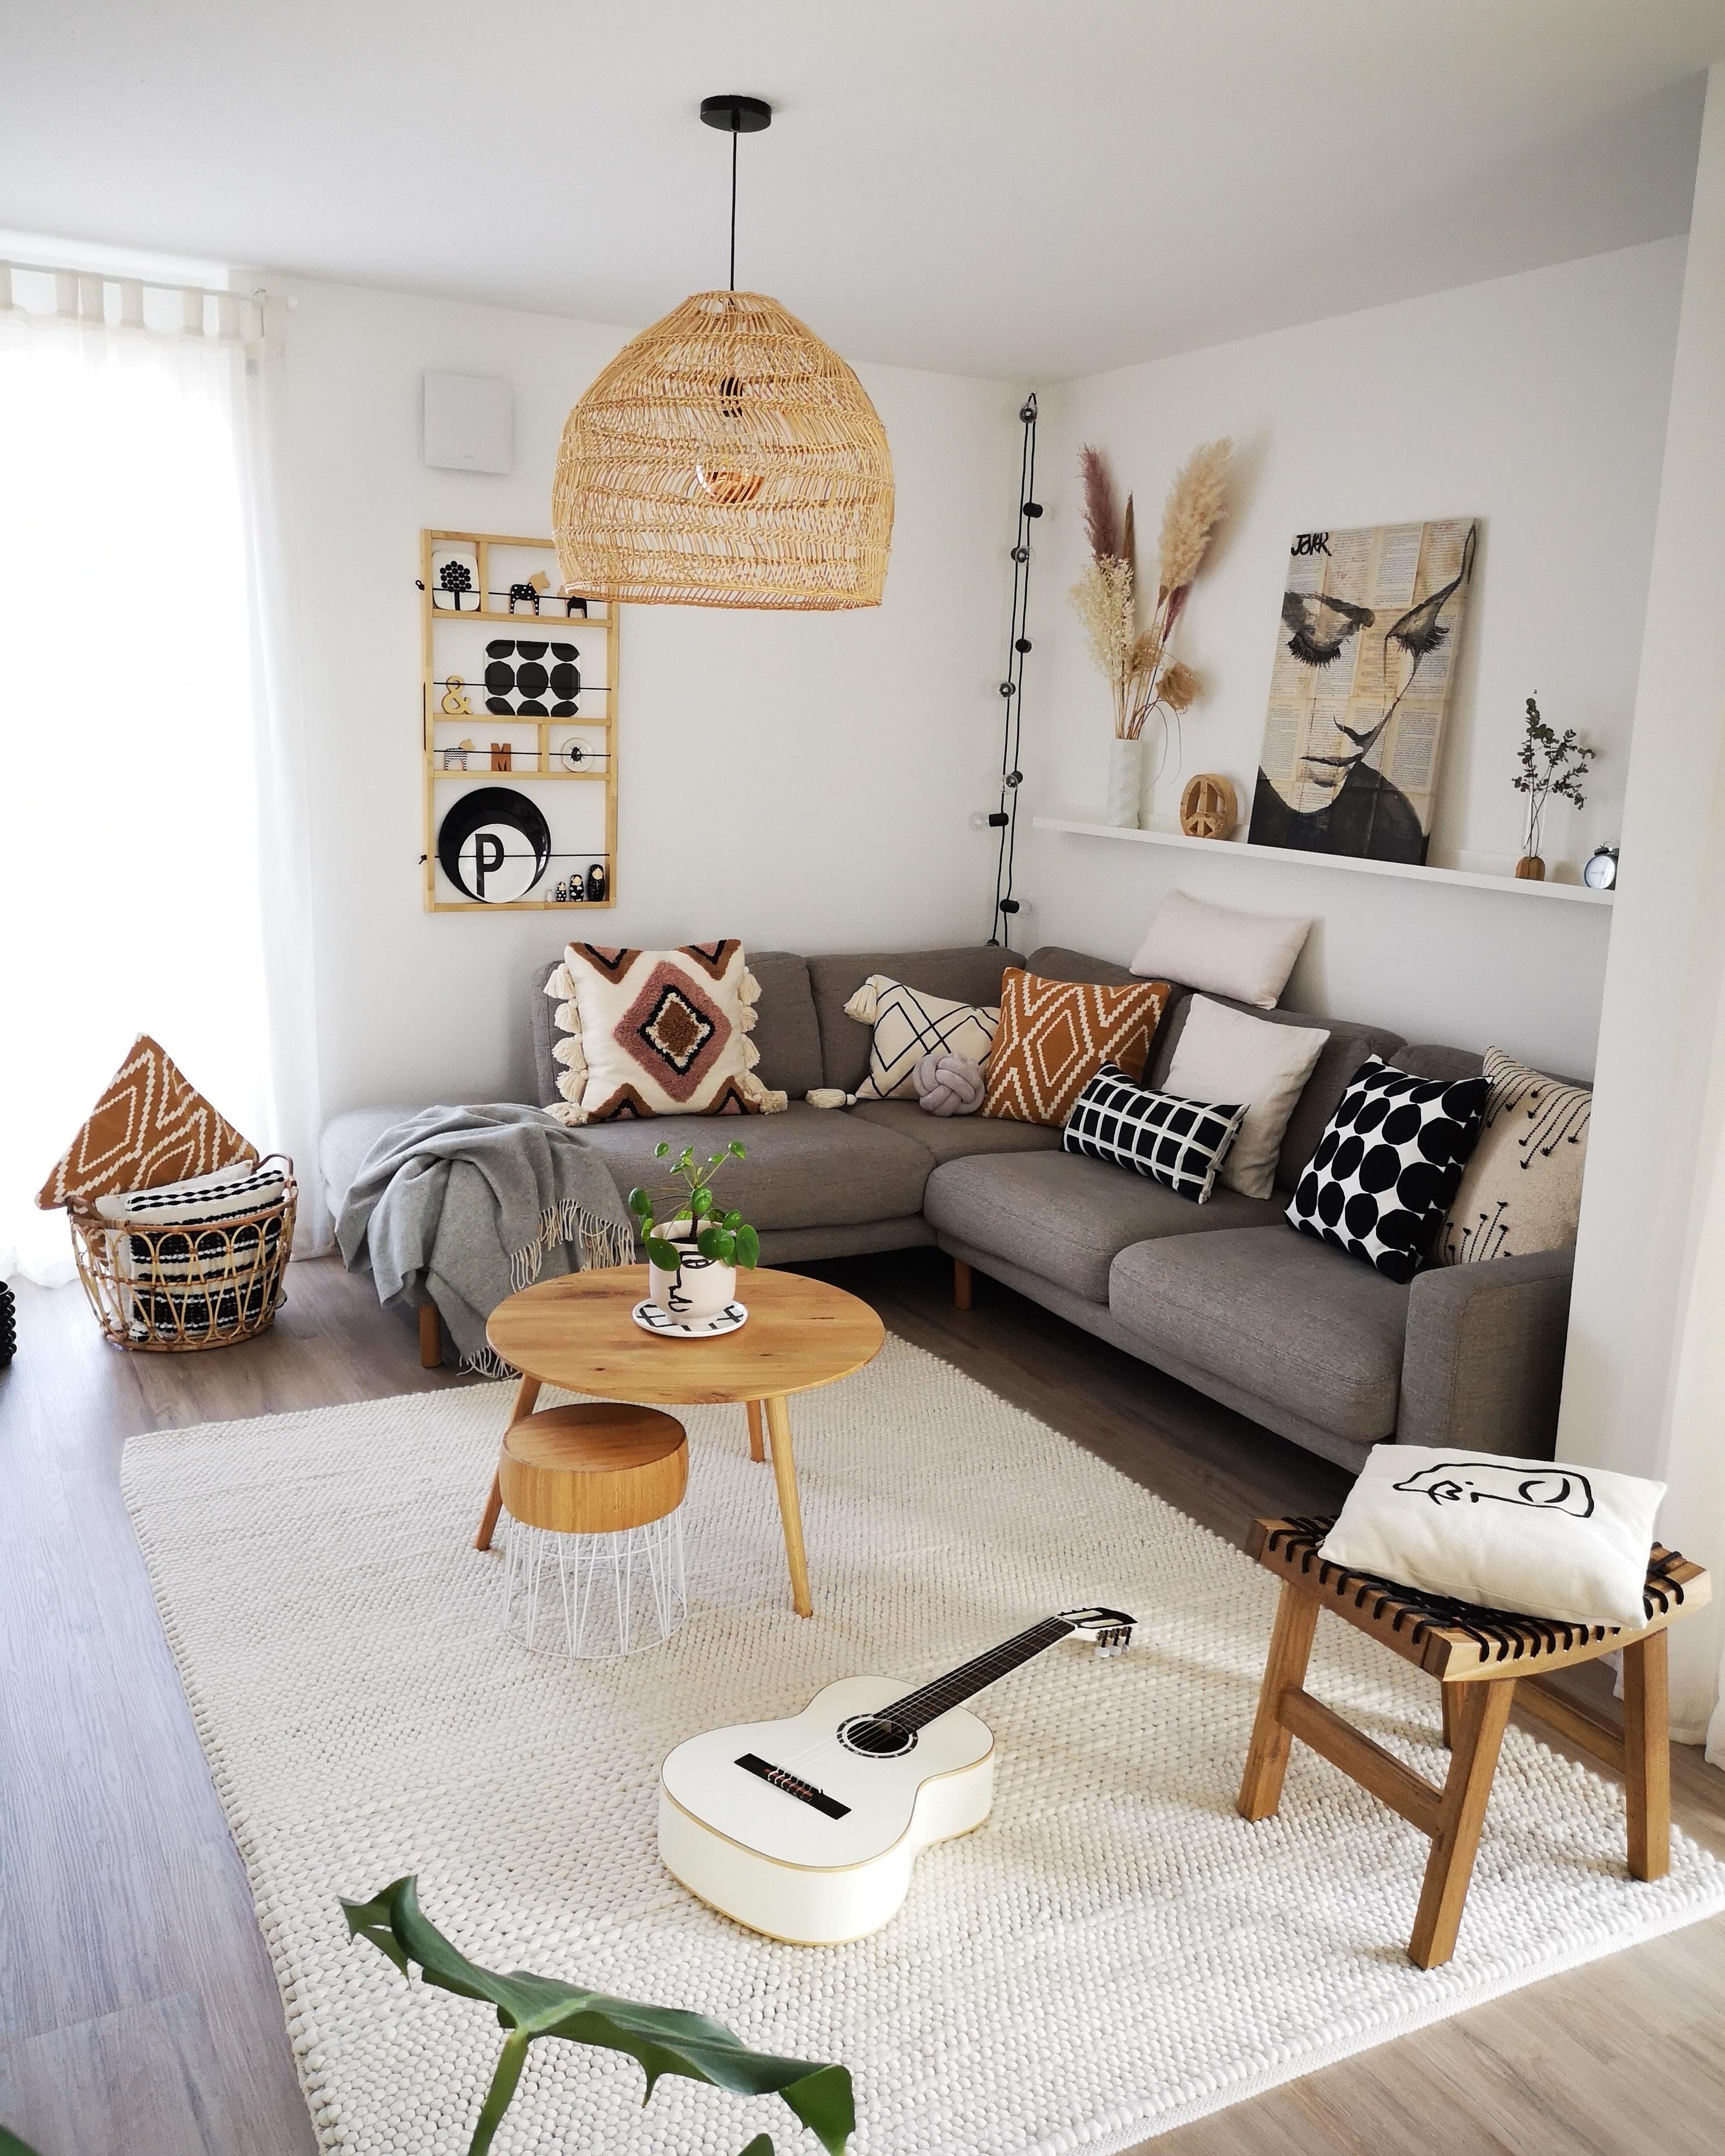 Unser Wohnzimmer mal wieder in einem etwas anderen Look 😊

#livingroomdecor #boholiving #bohostyle #scandinavianhome